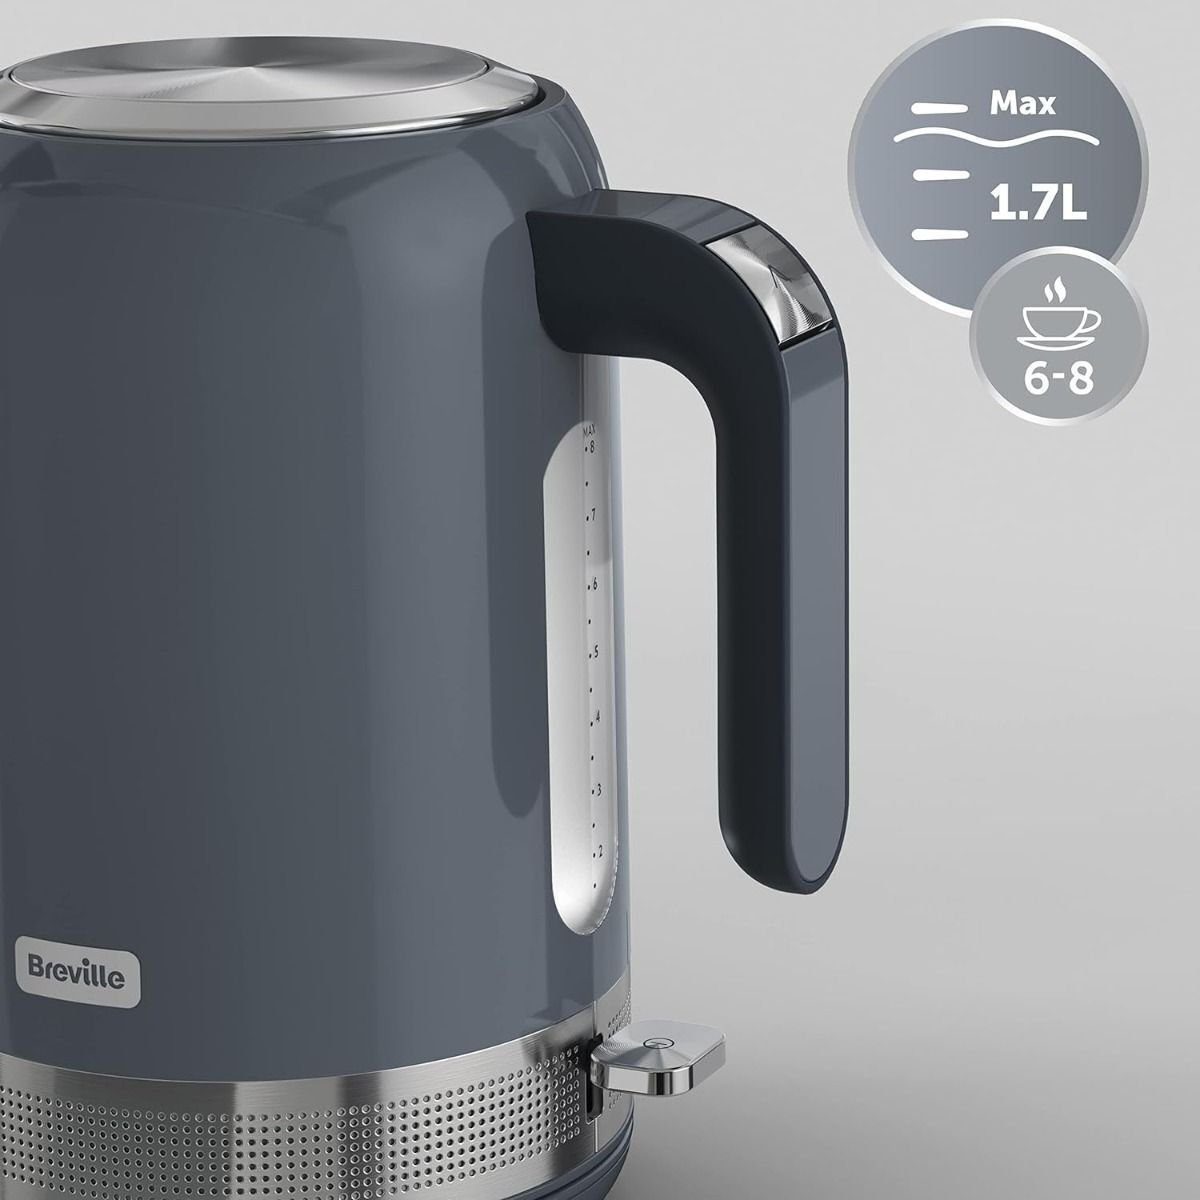 Breville Wasserkocher Elektrischer by Sage 2200,00 Teekocher Kettle Tassen,rutschfeste schnelle Tragbar 1.7L Edelstahl,Thermosicherung,6 W, bis 8 Füße Kochzeiten